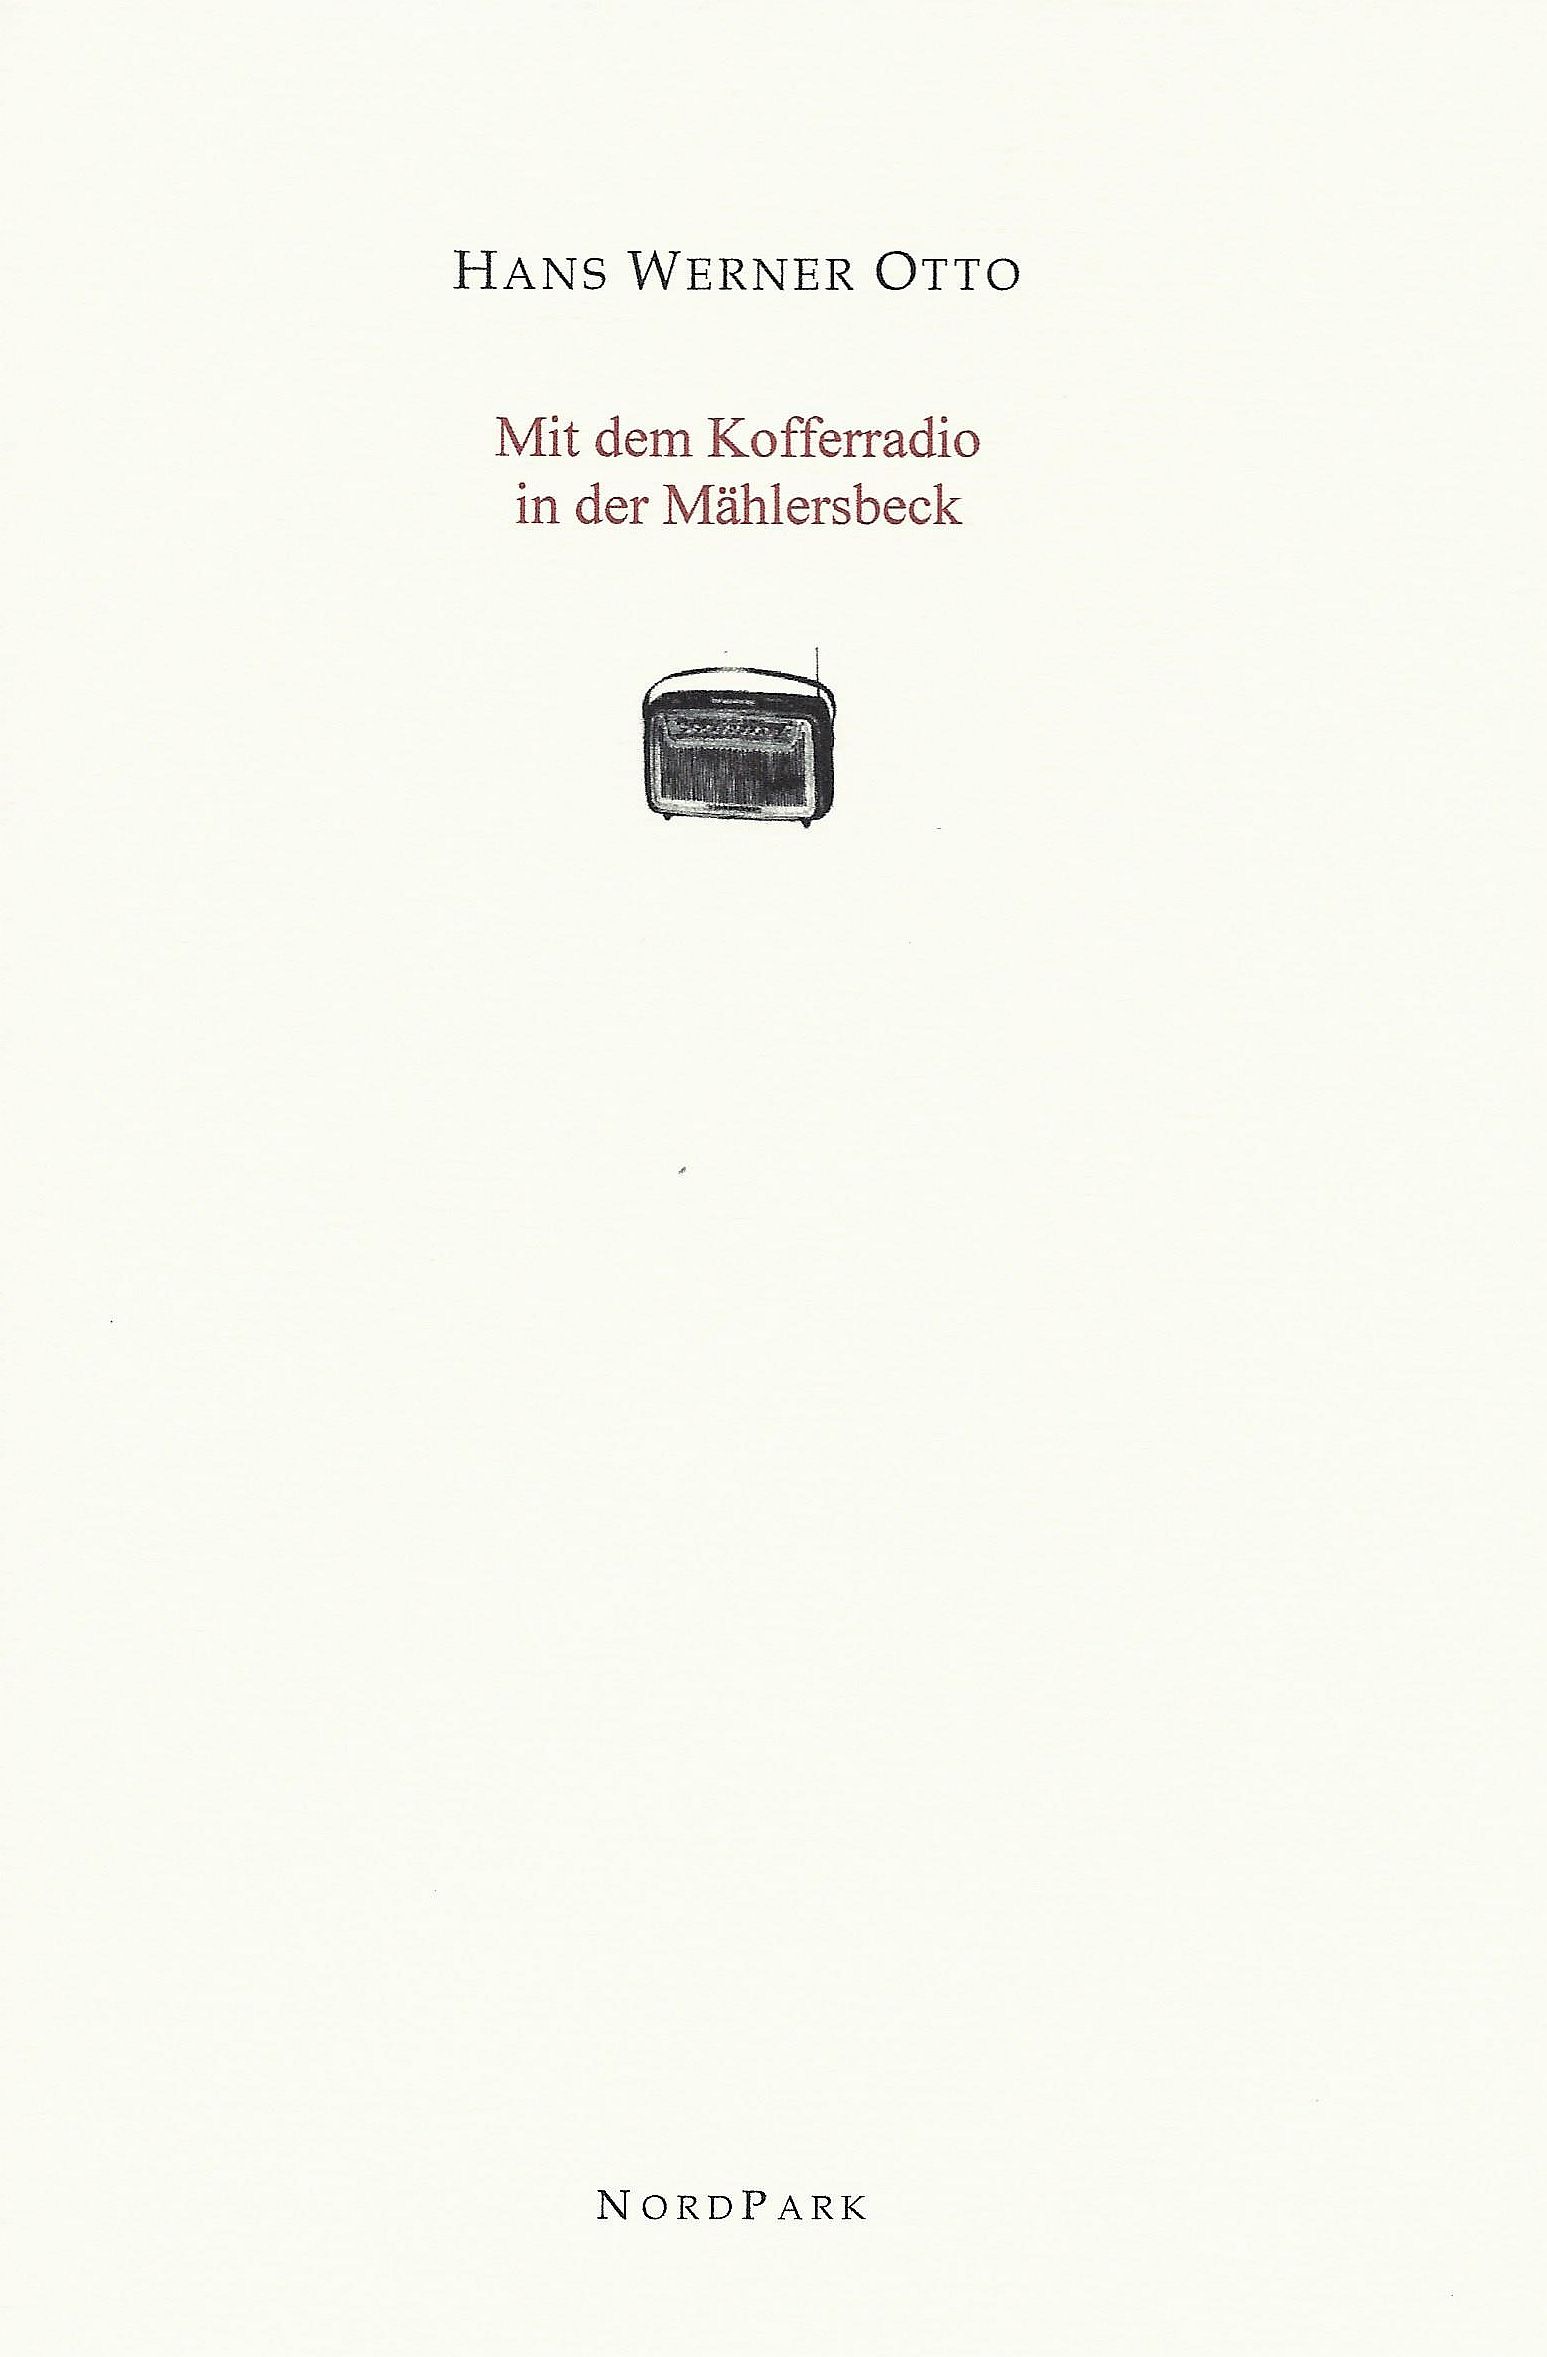 Die Besonderen Hefte: Otto - Mit dem Kofferradio in der Mählersbeck